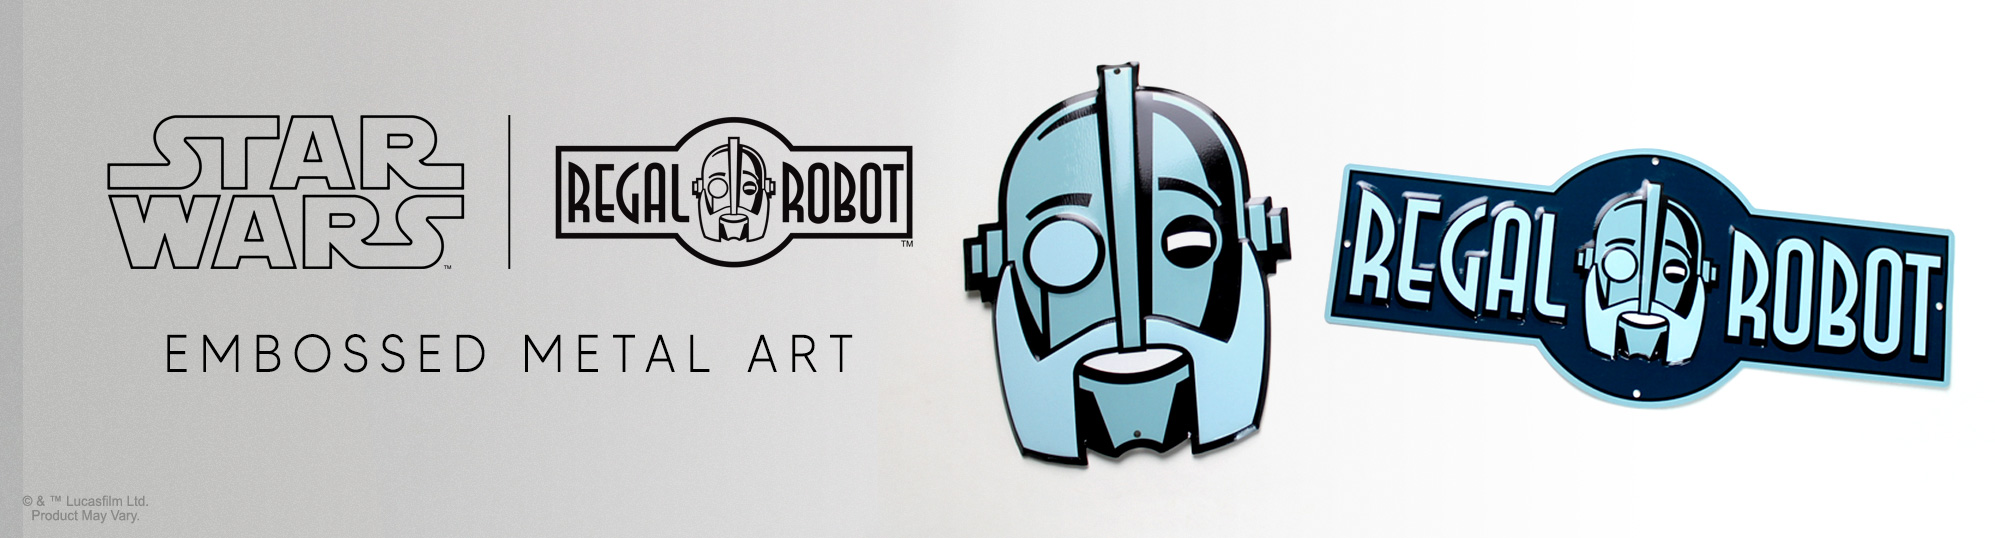 Regal Robot logo sign for wall art